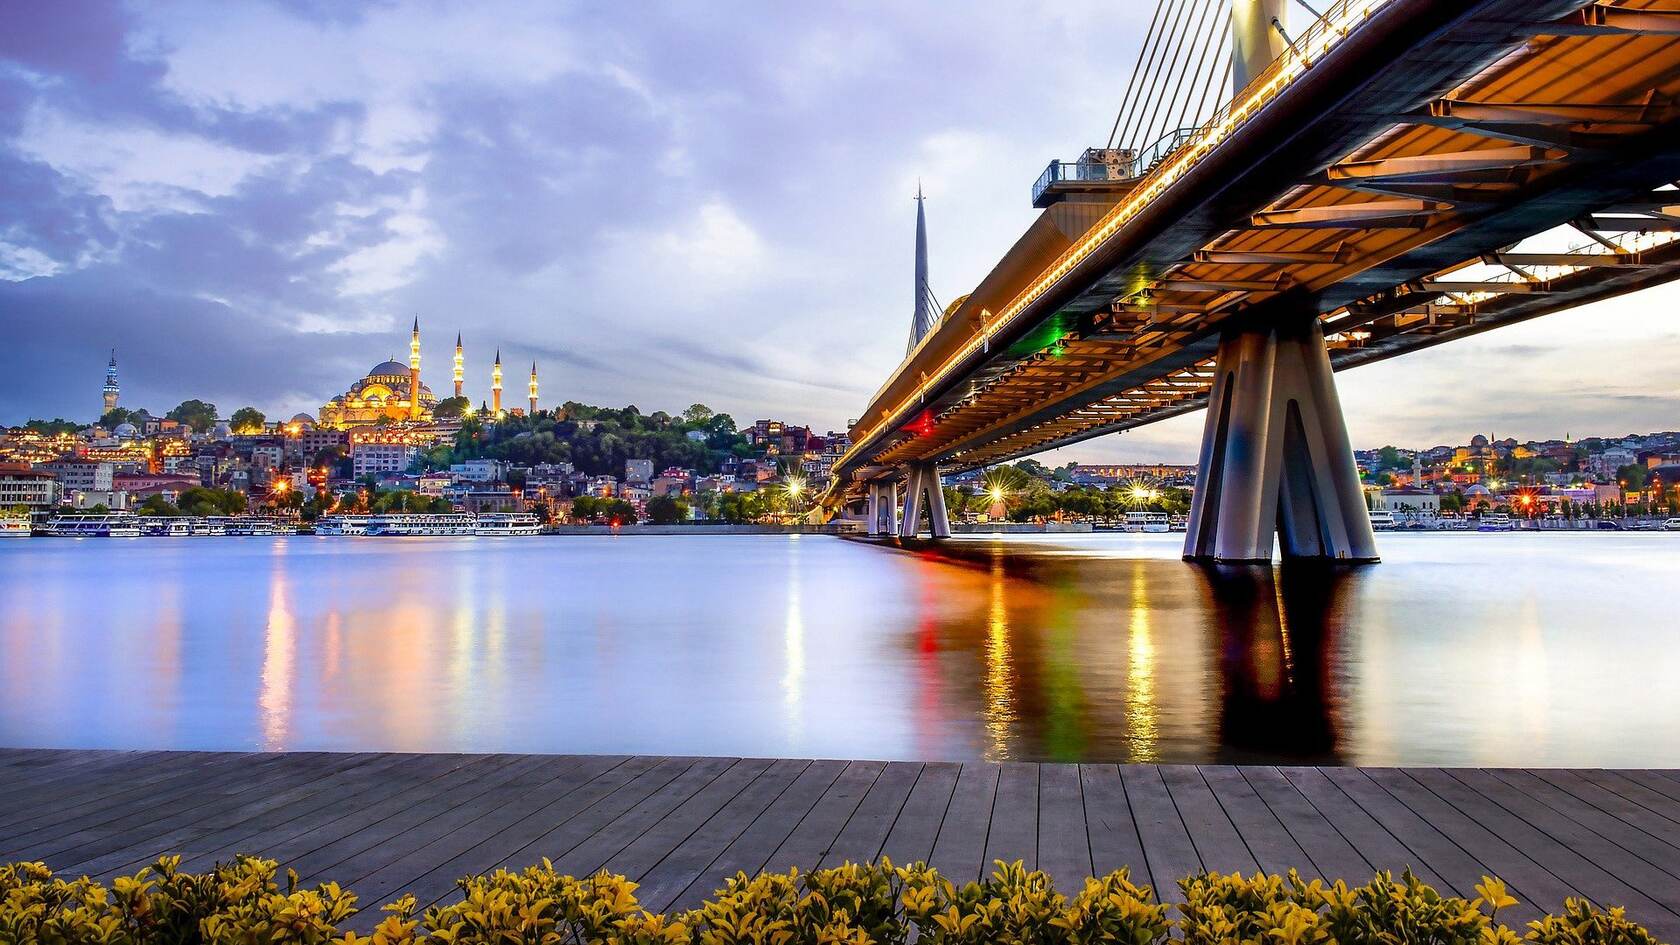 伊斯坦布尔 城市 大桥 桥梁 城市风光 灯火唯美桌面壁纸图片